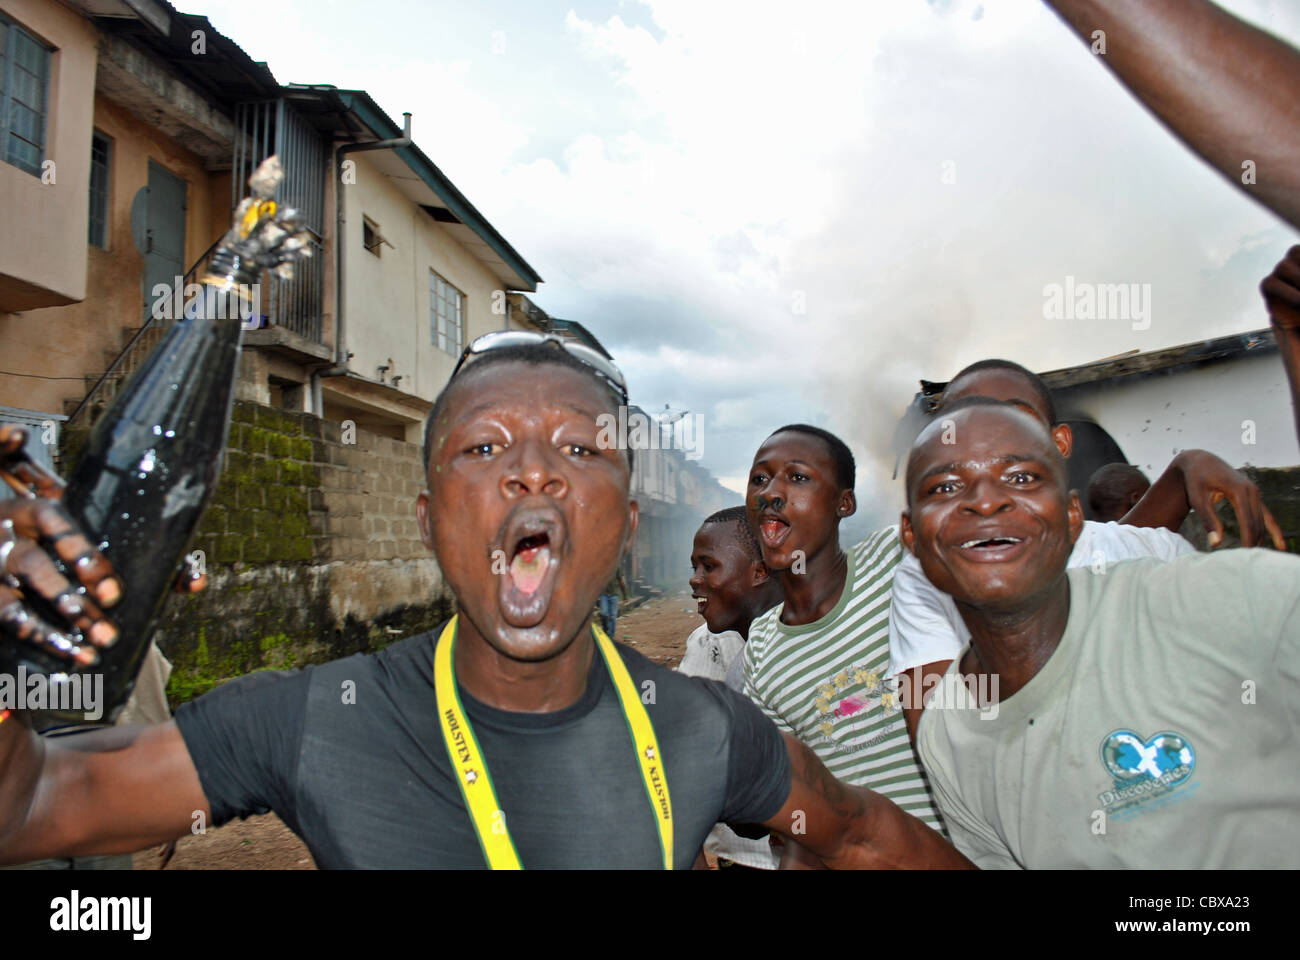 Los partidarios del candidato SLPP Julius Maada Bio rampage con cócteles Molotov durante la violencia política en la ciudad de Bo, Sierra Leona Foto de stock